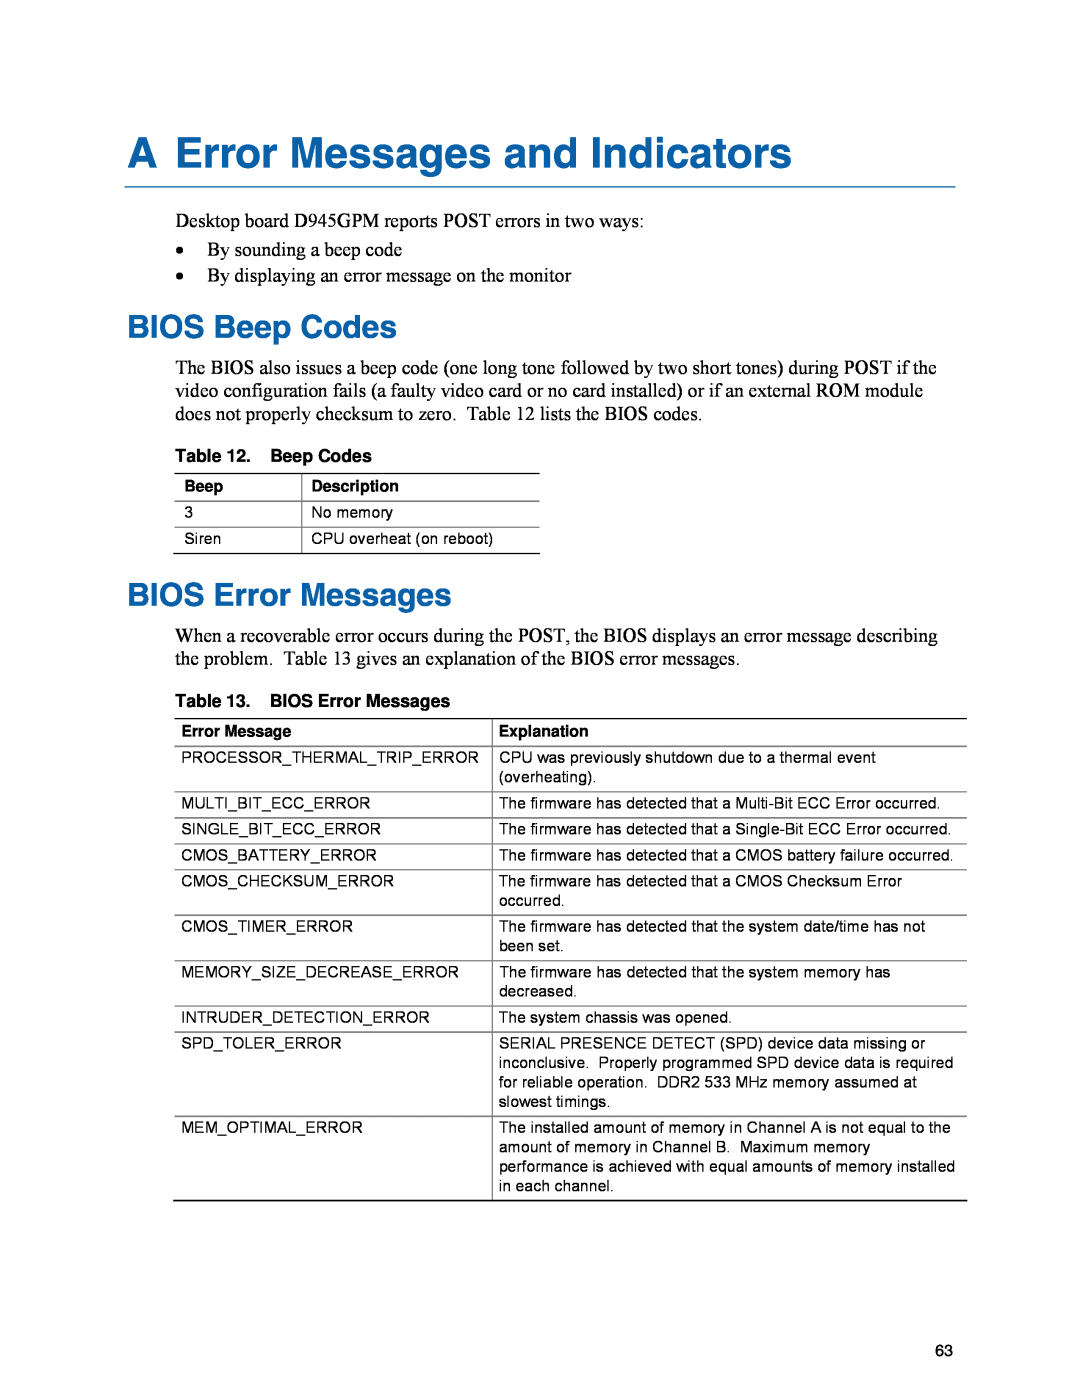 Intel D945GPM manual A Error Messages and Indicators, BIOS Beep Codes, BIOS Error Messages 